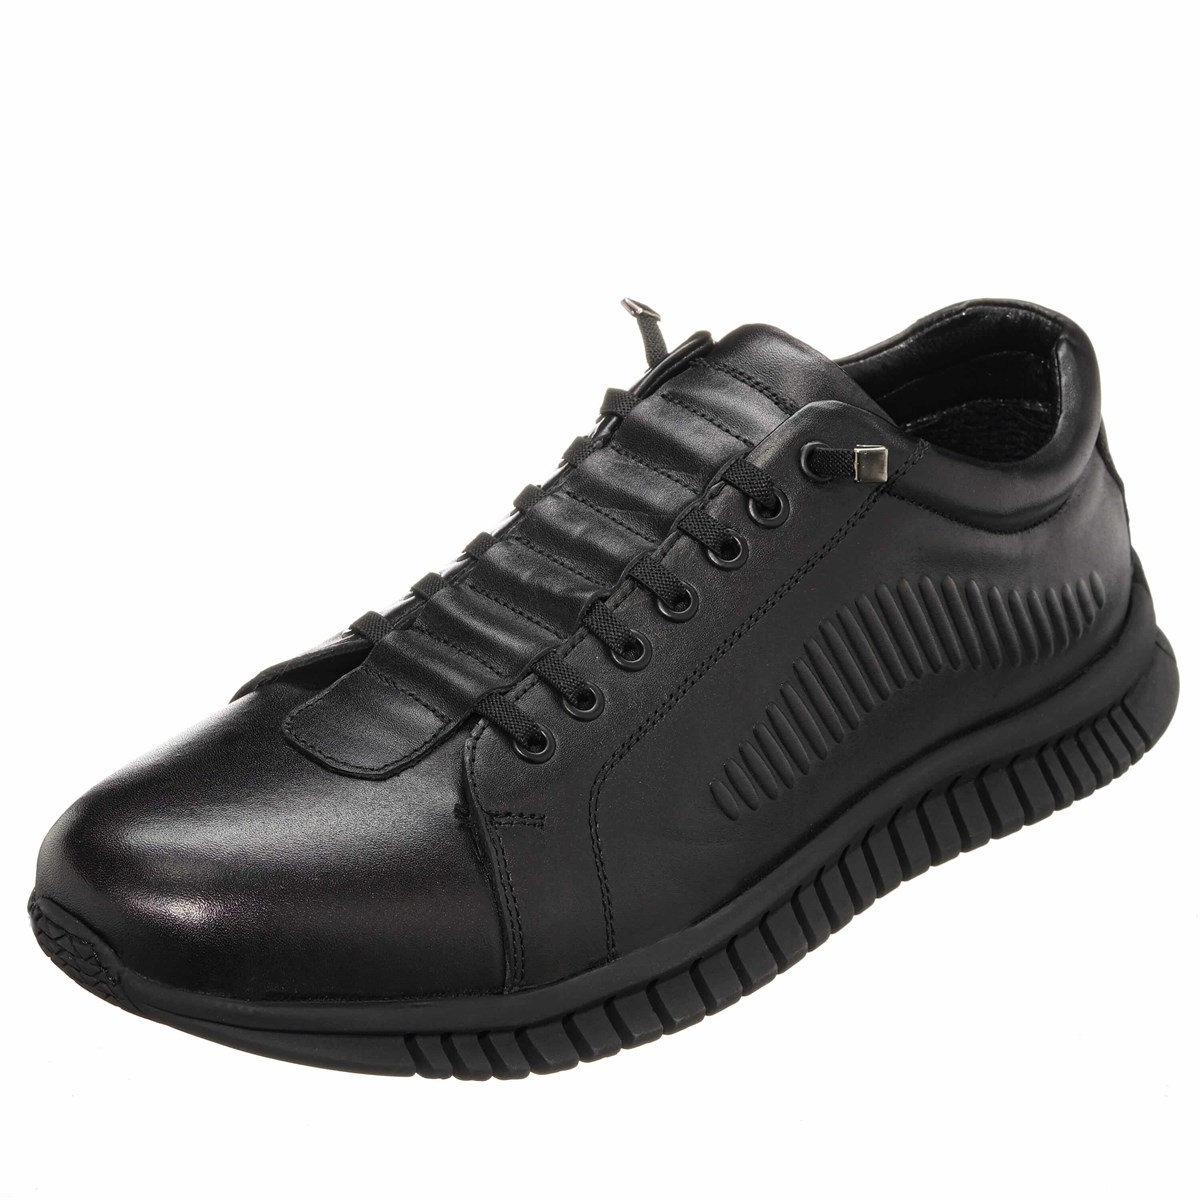 OGS101 Siyah Dana Derisi Vip Büyük Numara Erkek Spor ayakkabı Kacuçuk Taban  Rahat Geniş Kalıp Özel Seri Lastik Bağcıklı